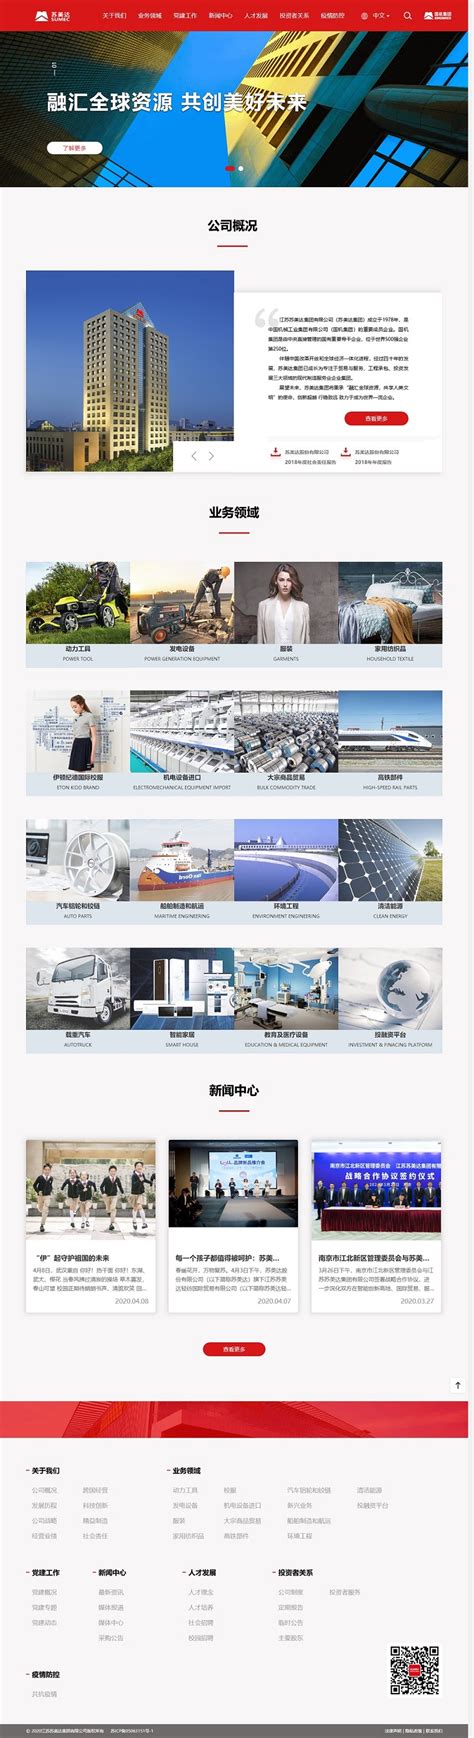 苏美达集团-南京集团网站建设公司-盛况科技